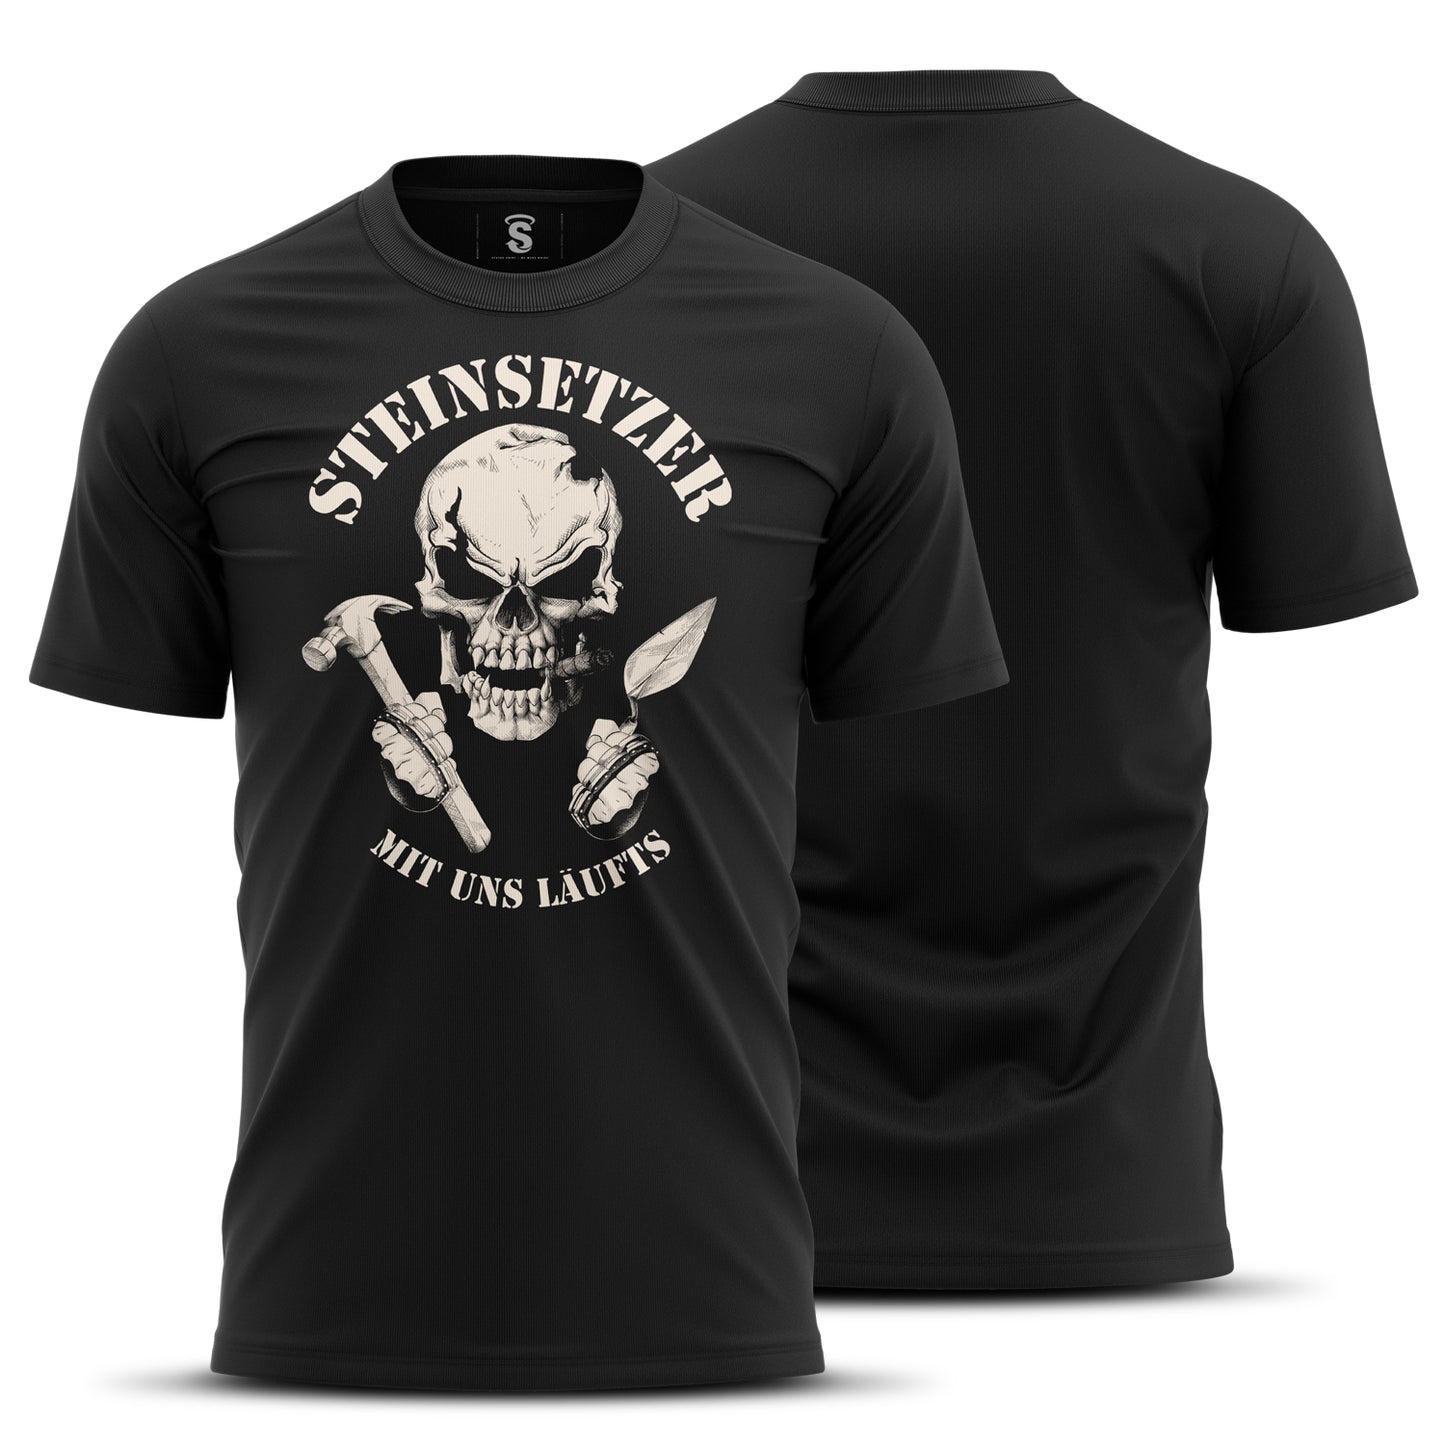 T-Shirt Steinsetzer